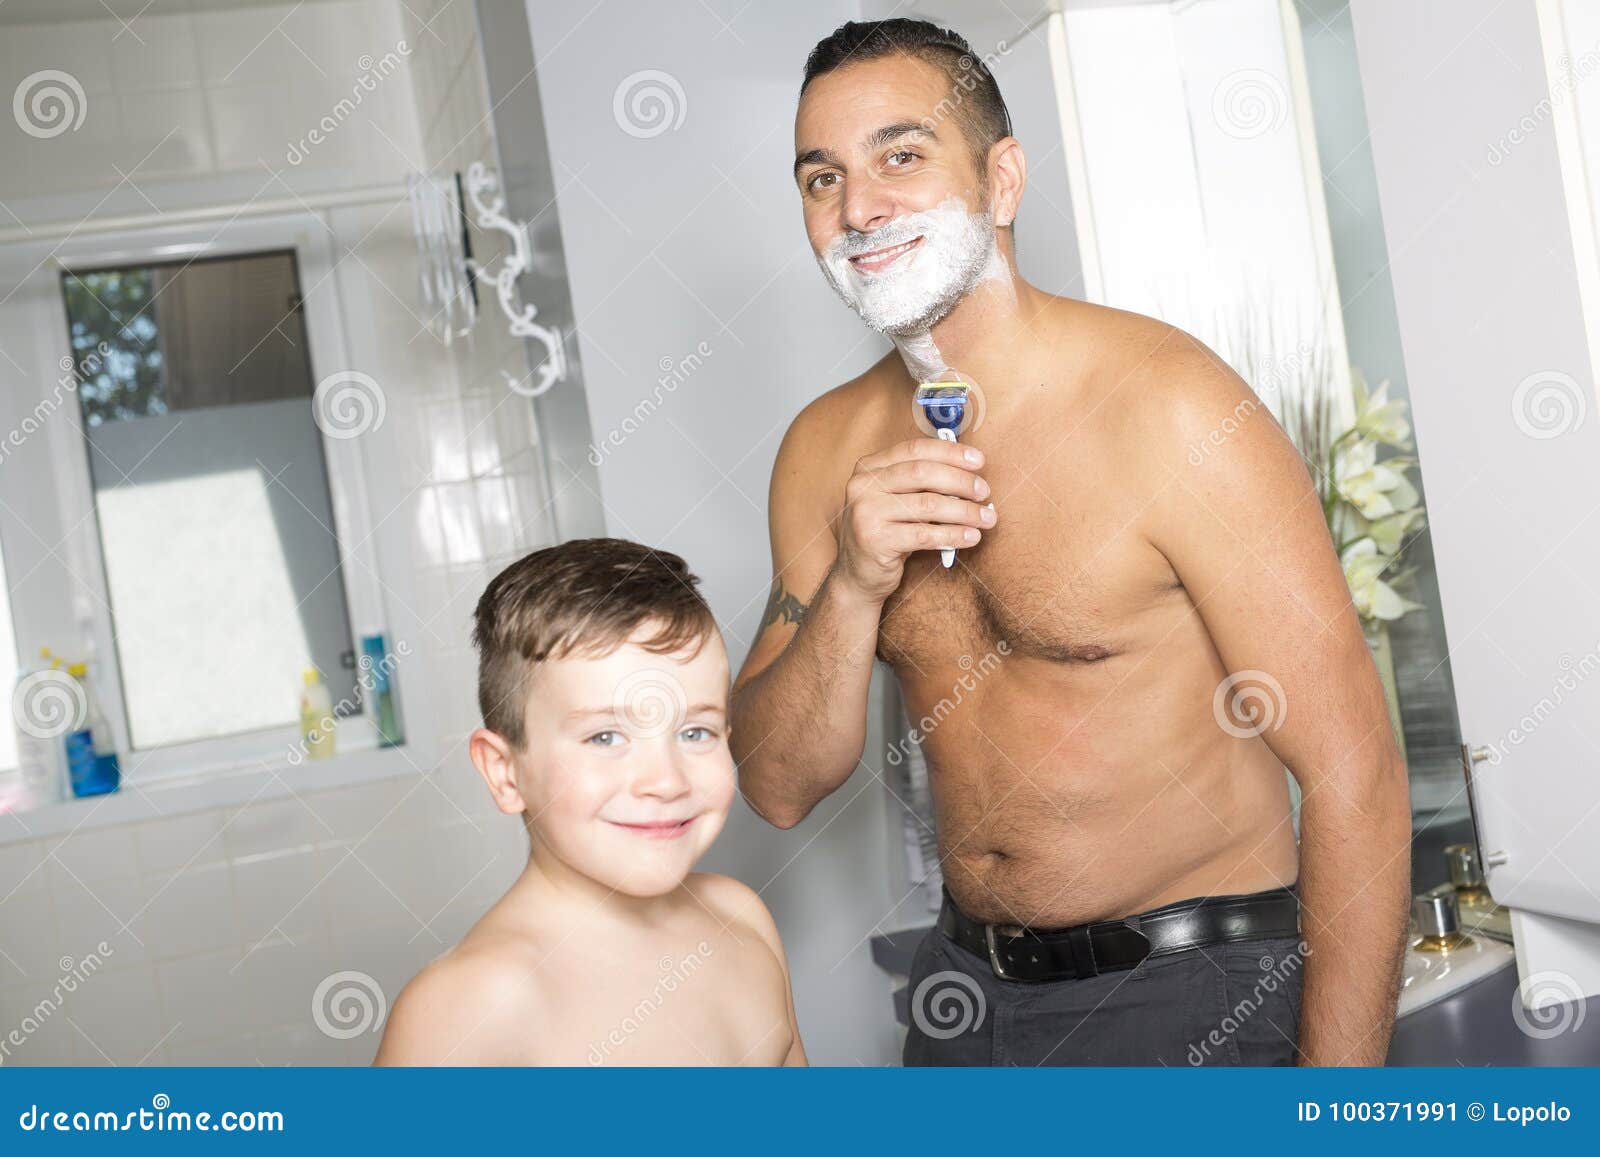 Брею сыну видео. Фотосессия пап в ванне. Малыш с папой в ванне. Папа купается. Сын в ванне.